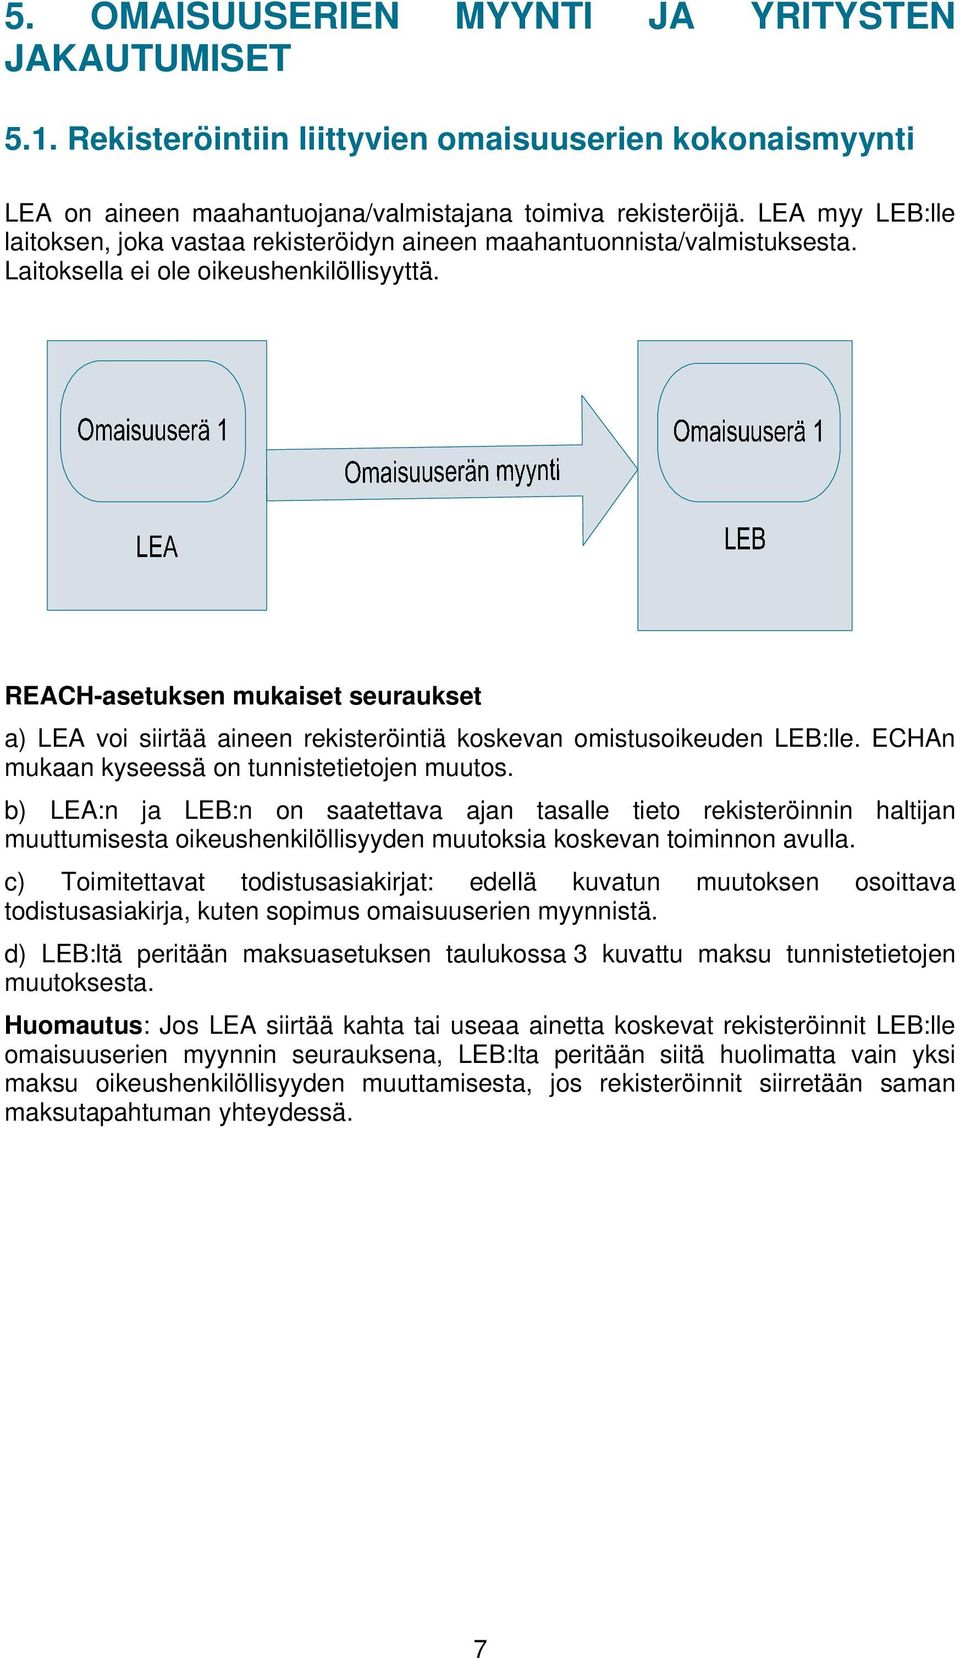 a) LEA voi siirtää aineen rekisteröintiä koskevan omistusoikeuden LEB:lle. ECHAn mukaan kyseessä on tunnistetietojen muutos.